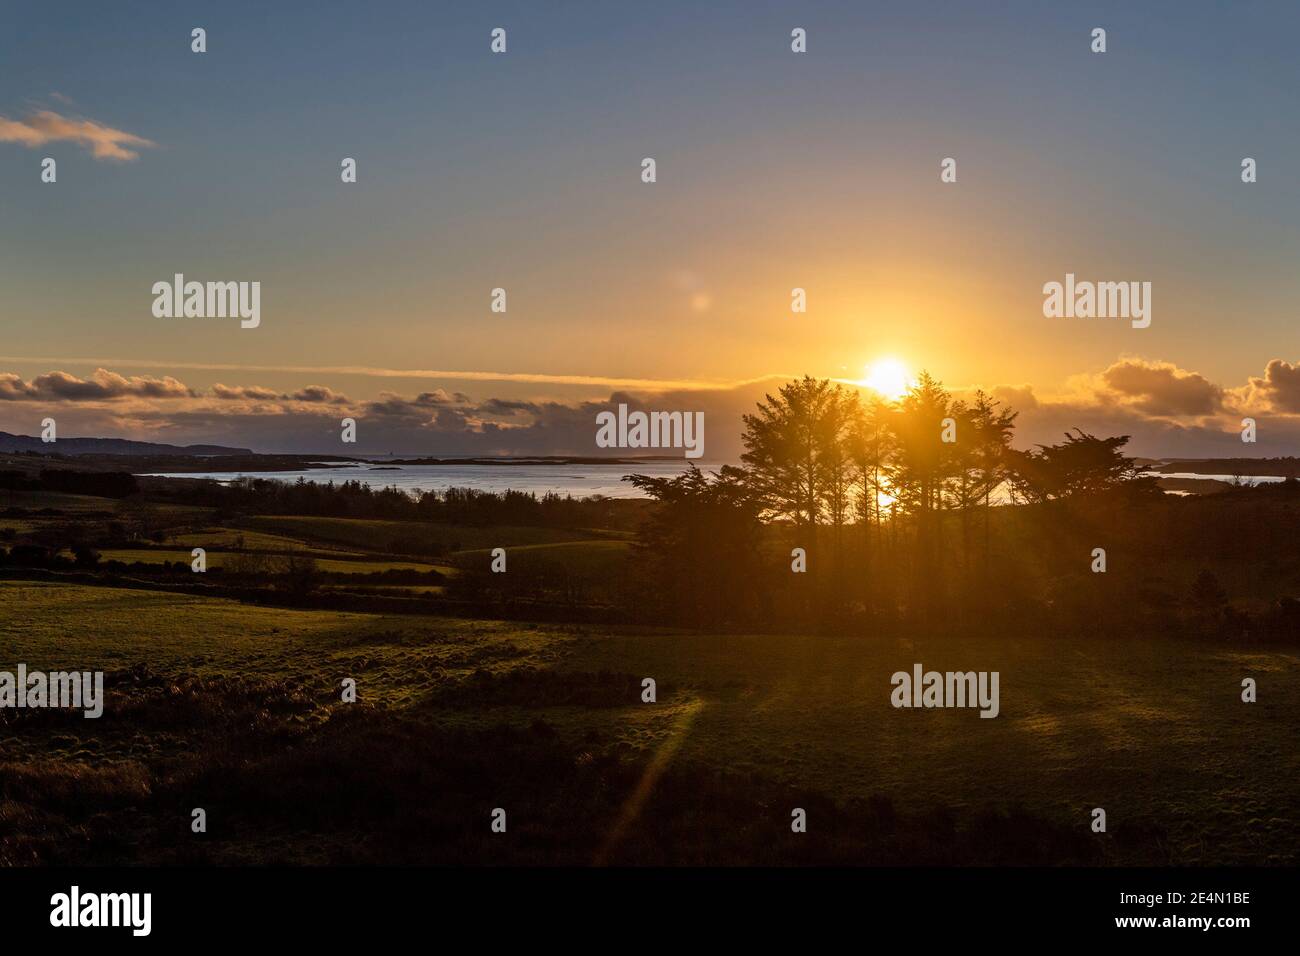 Roaring Water Bay, West Cork, Irland. Januar 2021. Die Sonne geht über den Muschelfarmen in der Roaring Water Bay nach einem Tag voller Schnee, Sonne und Temperaturen unter dem Gefrierpunkt unter. Quelle: AG News/Alamy Live News Stockfoto